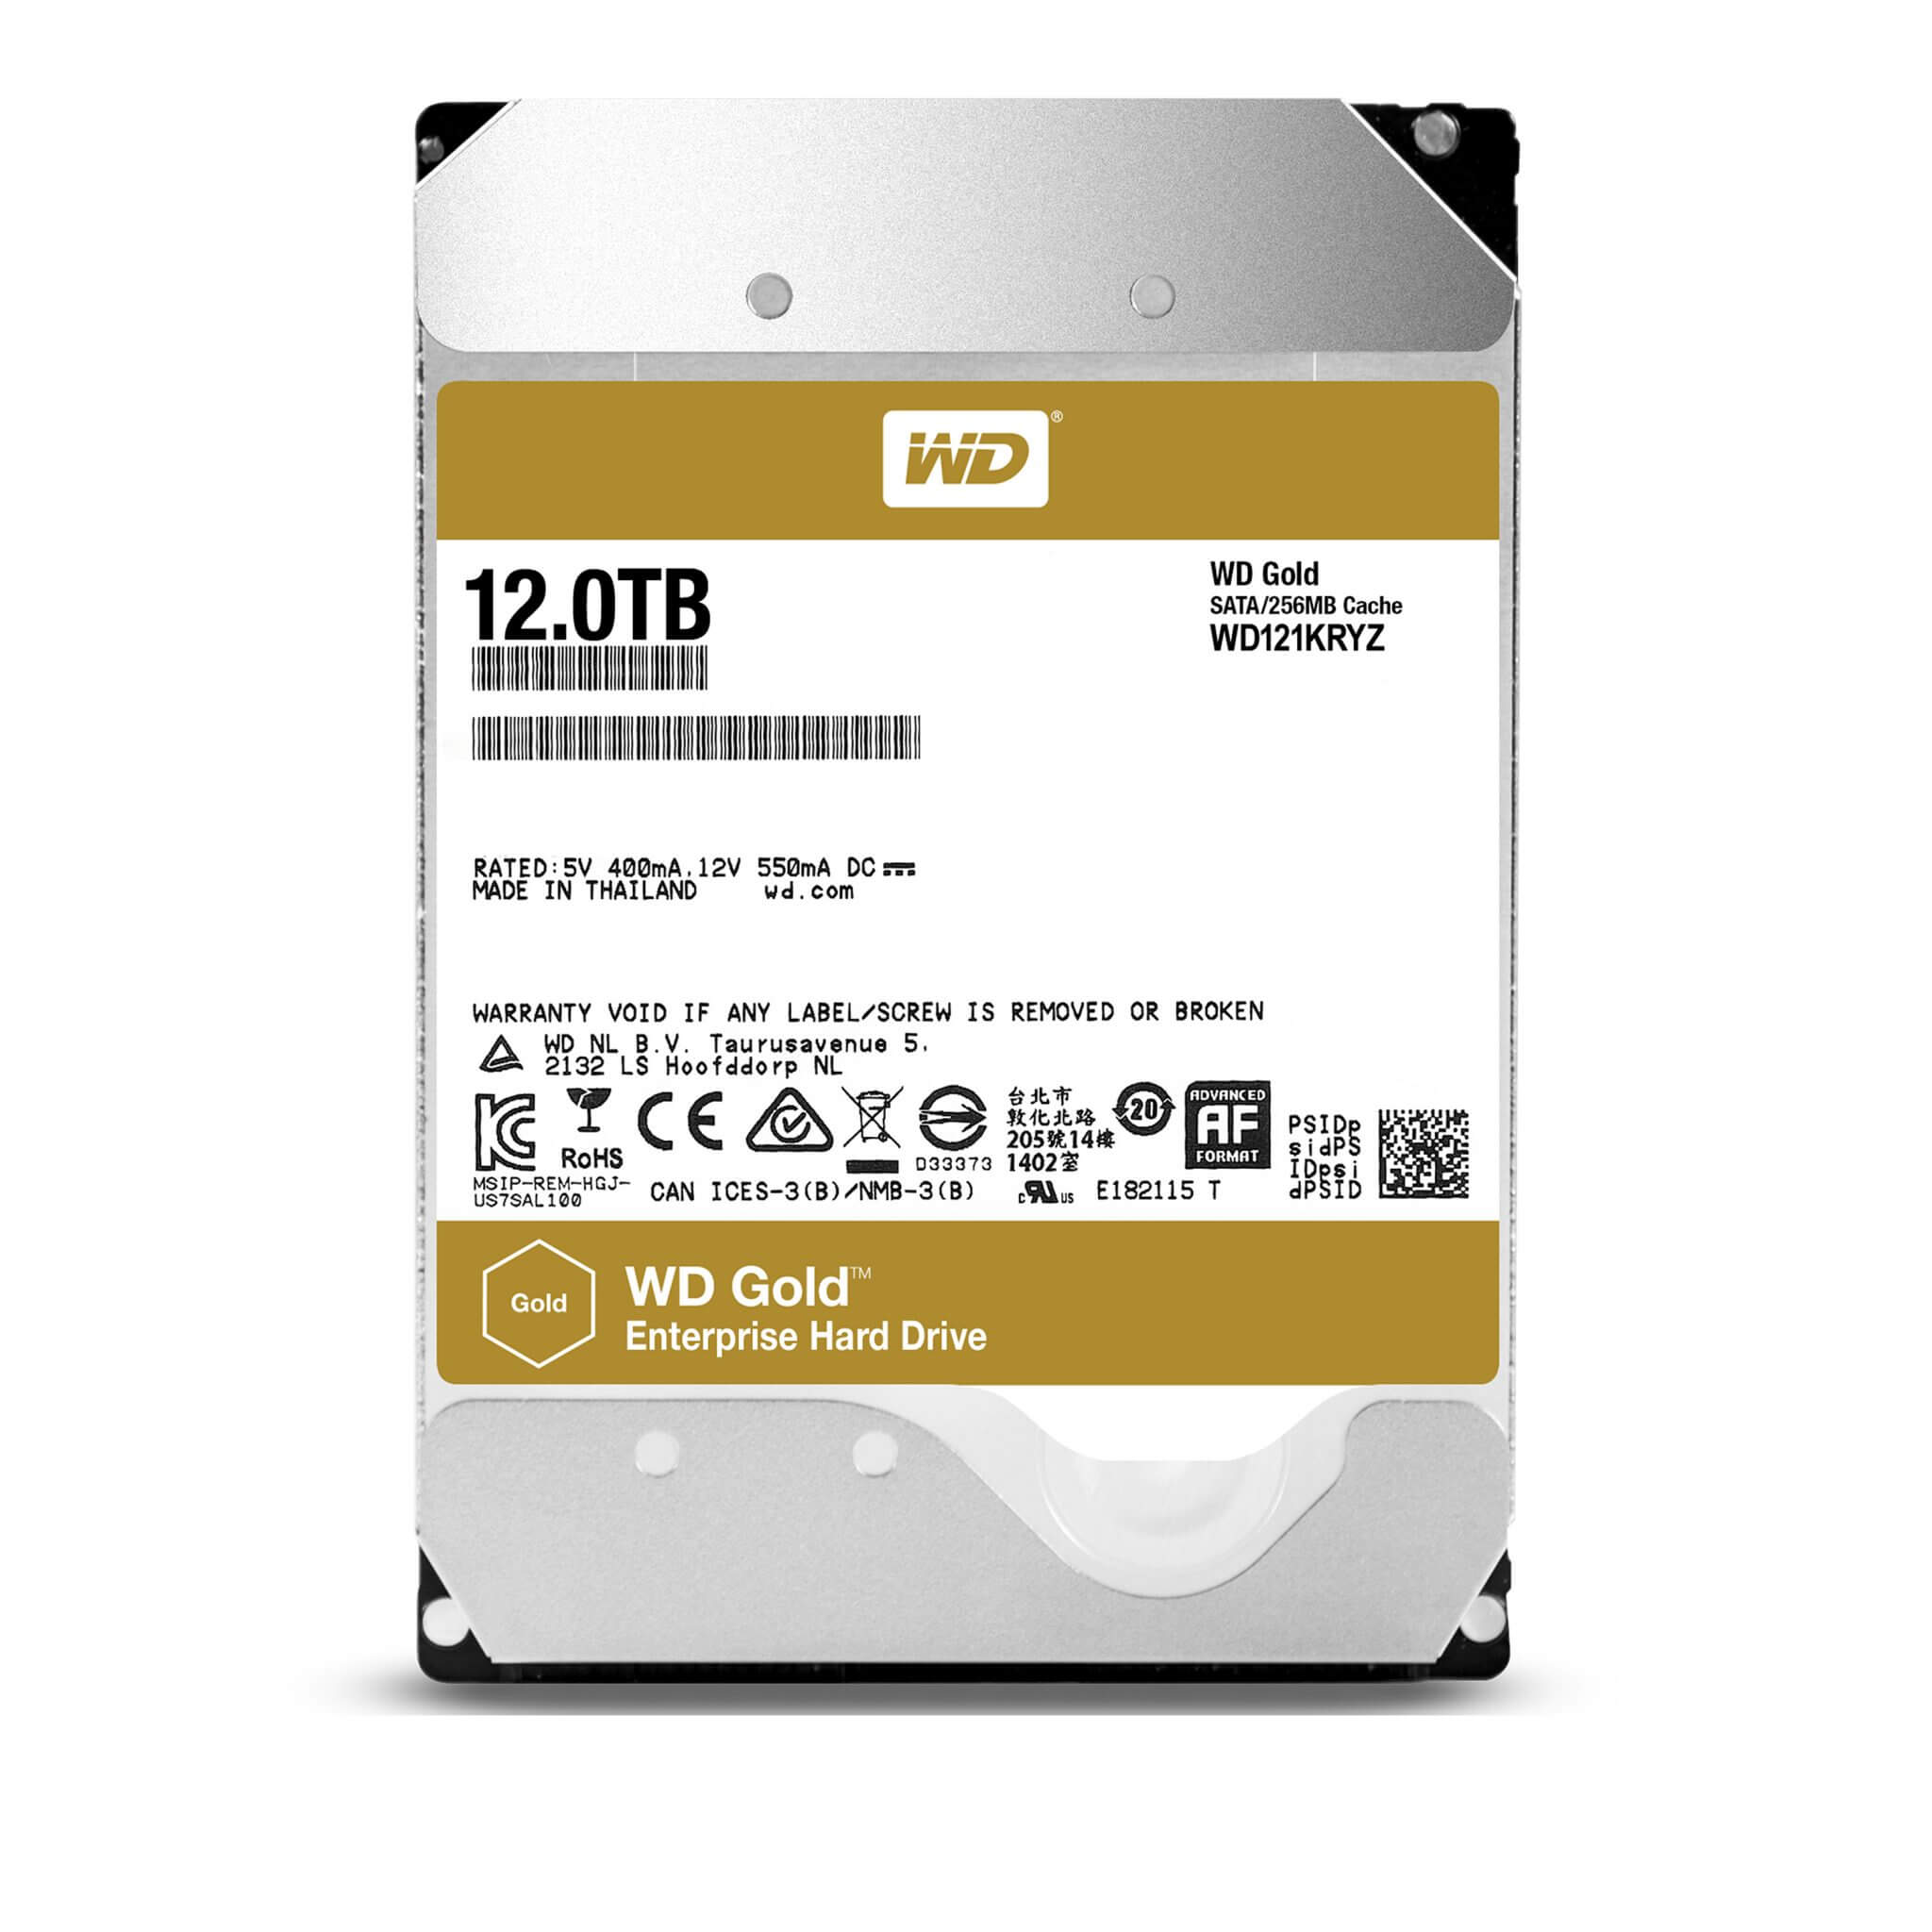 Wd 3 v 15 4 20. Western Digital 12tb. HDD WD Gold 6 TB. Жесткий диск WD wd121kryz. WD Gold 10tb wd102kryz.